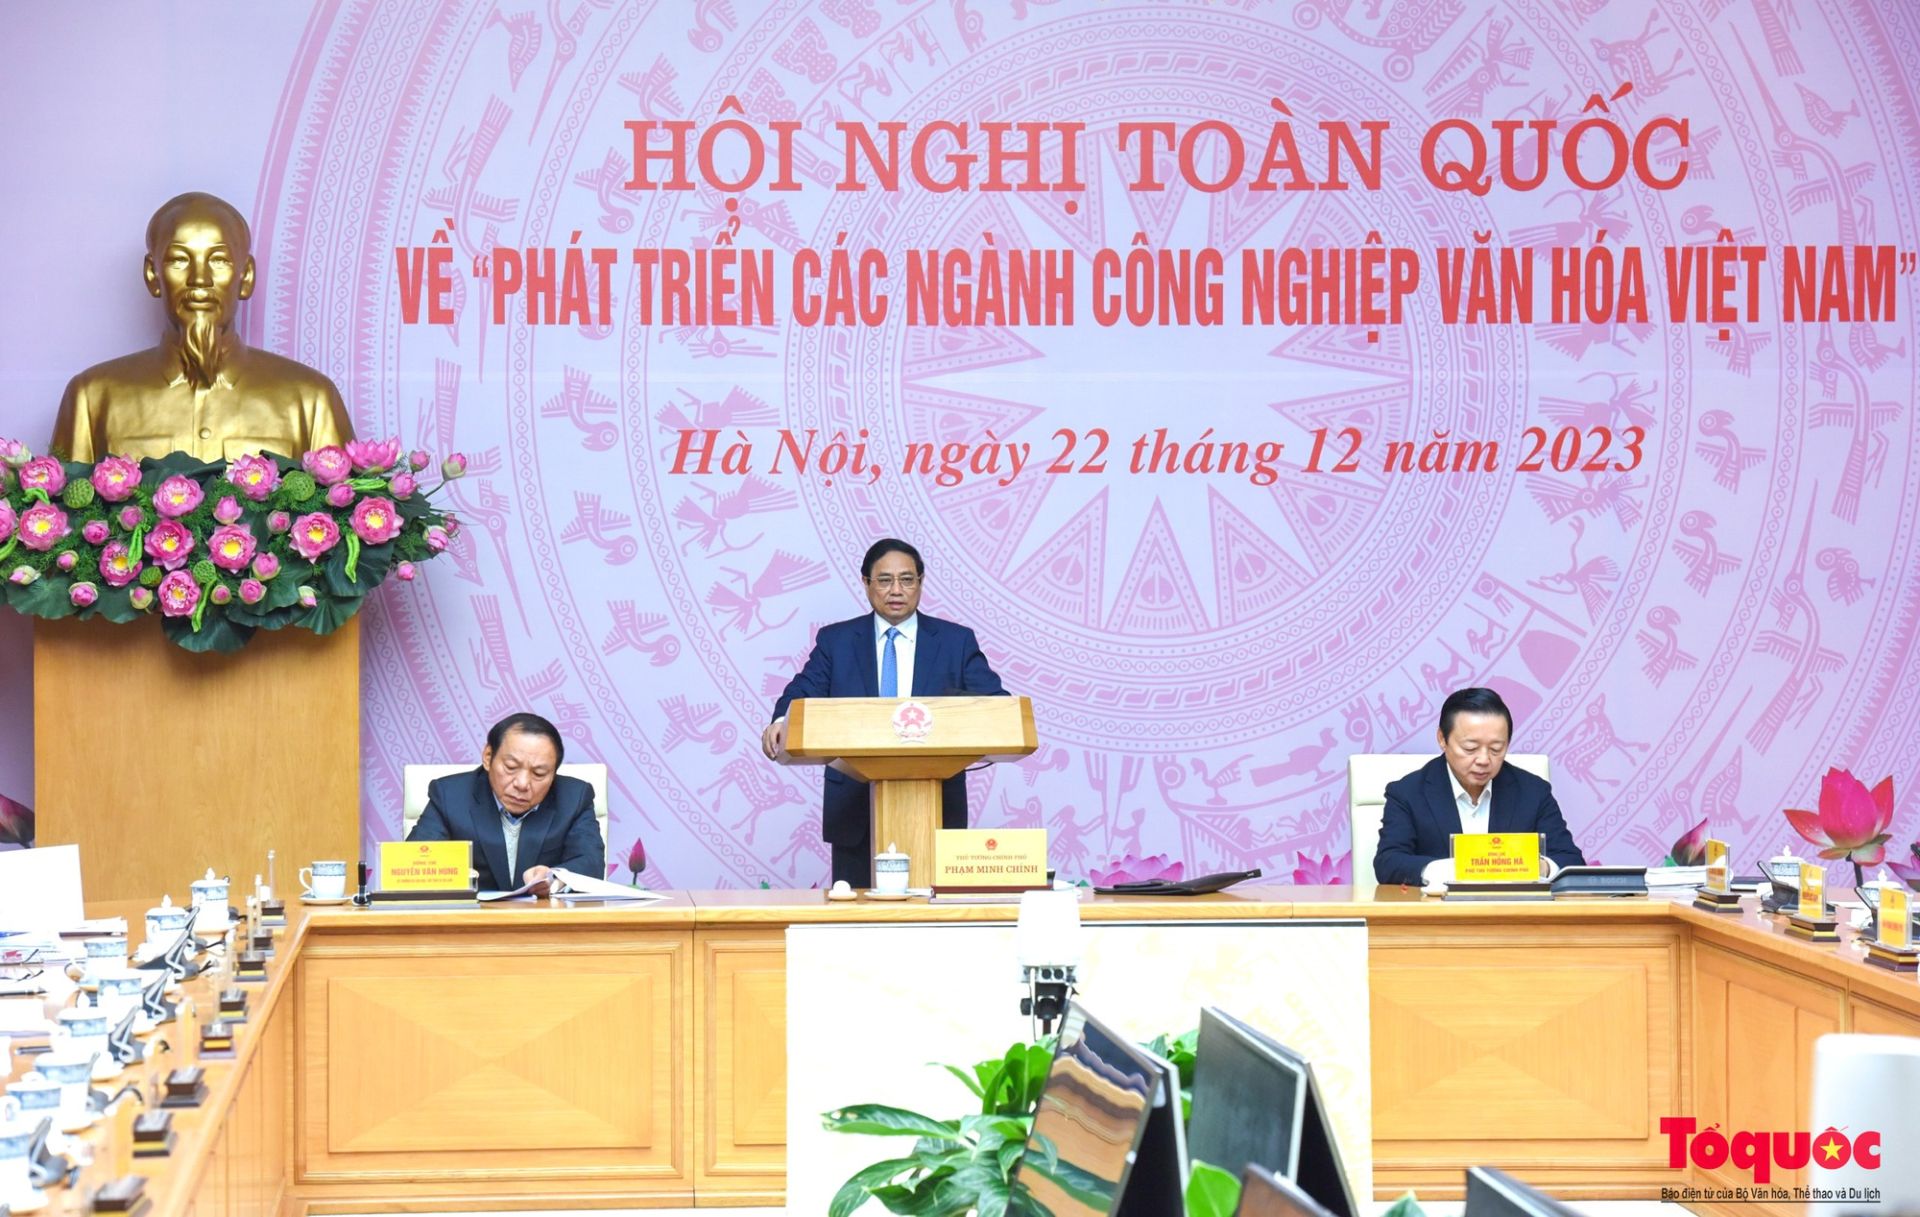 Thủ tướng Chính phủ Phạm Minh Chính chủ trì Hội nghị toàn quốc để bàn giải pháp phát triển các ngành công nghiệp văn hóa Việt Nam